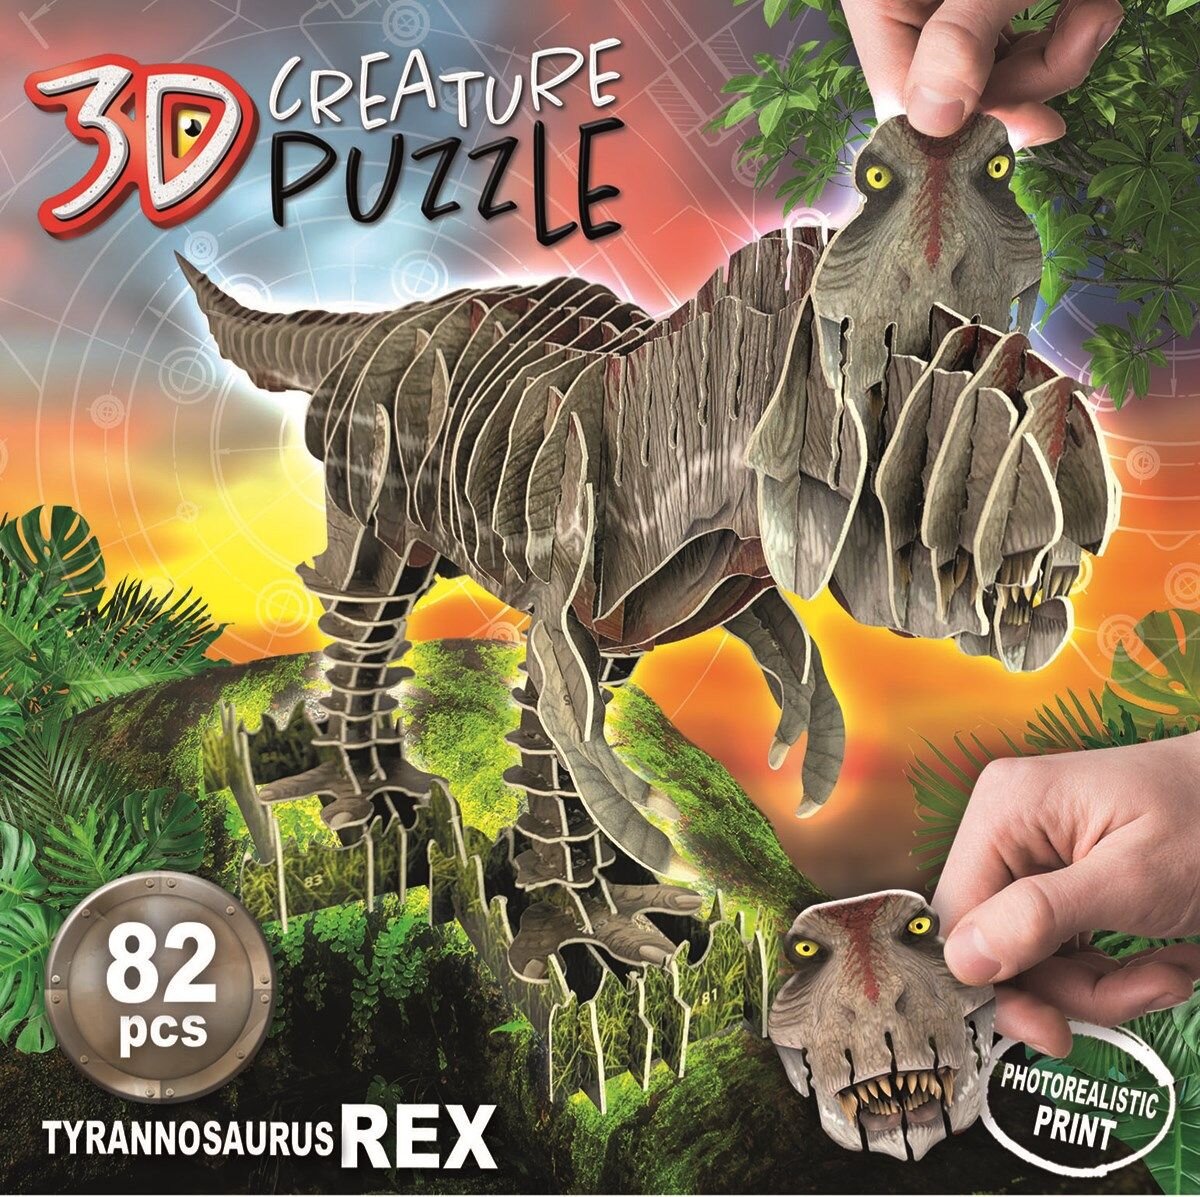 Educa 3D Puslespill, T-Rex 82 brikker